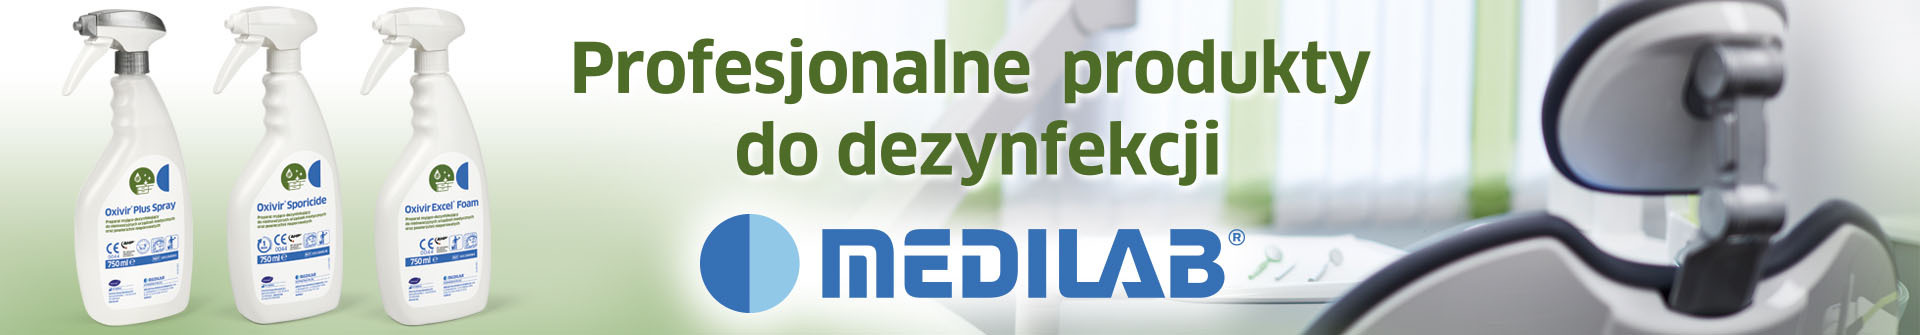 Profesjonalne produkty do dezynfekcji Medilab